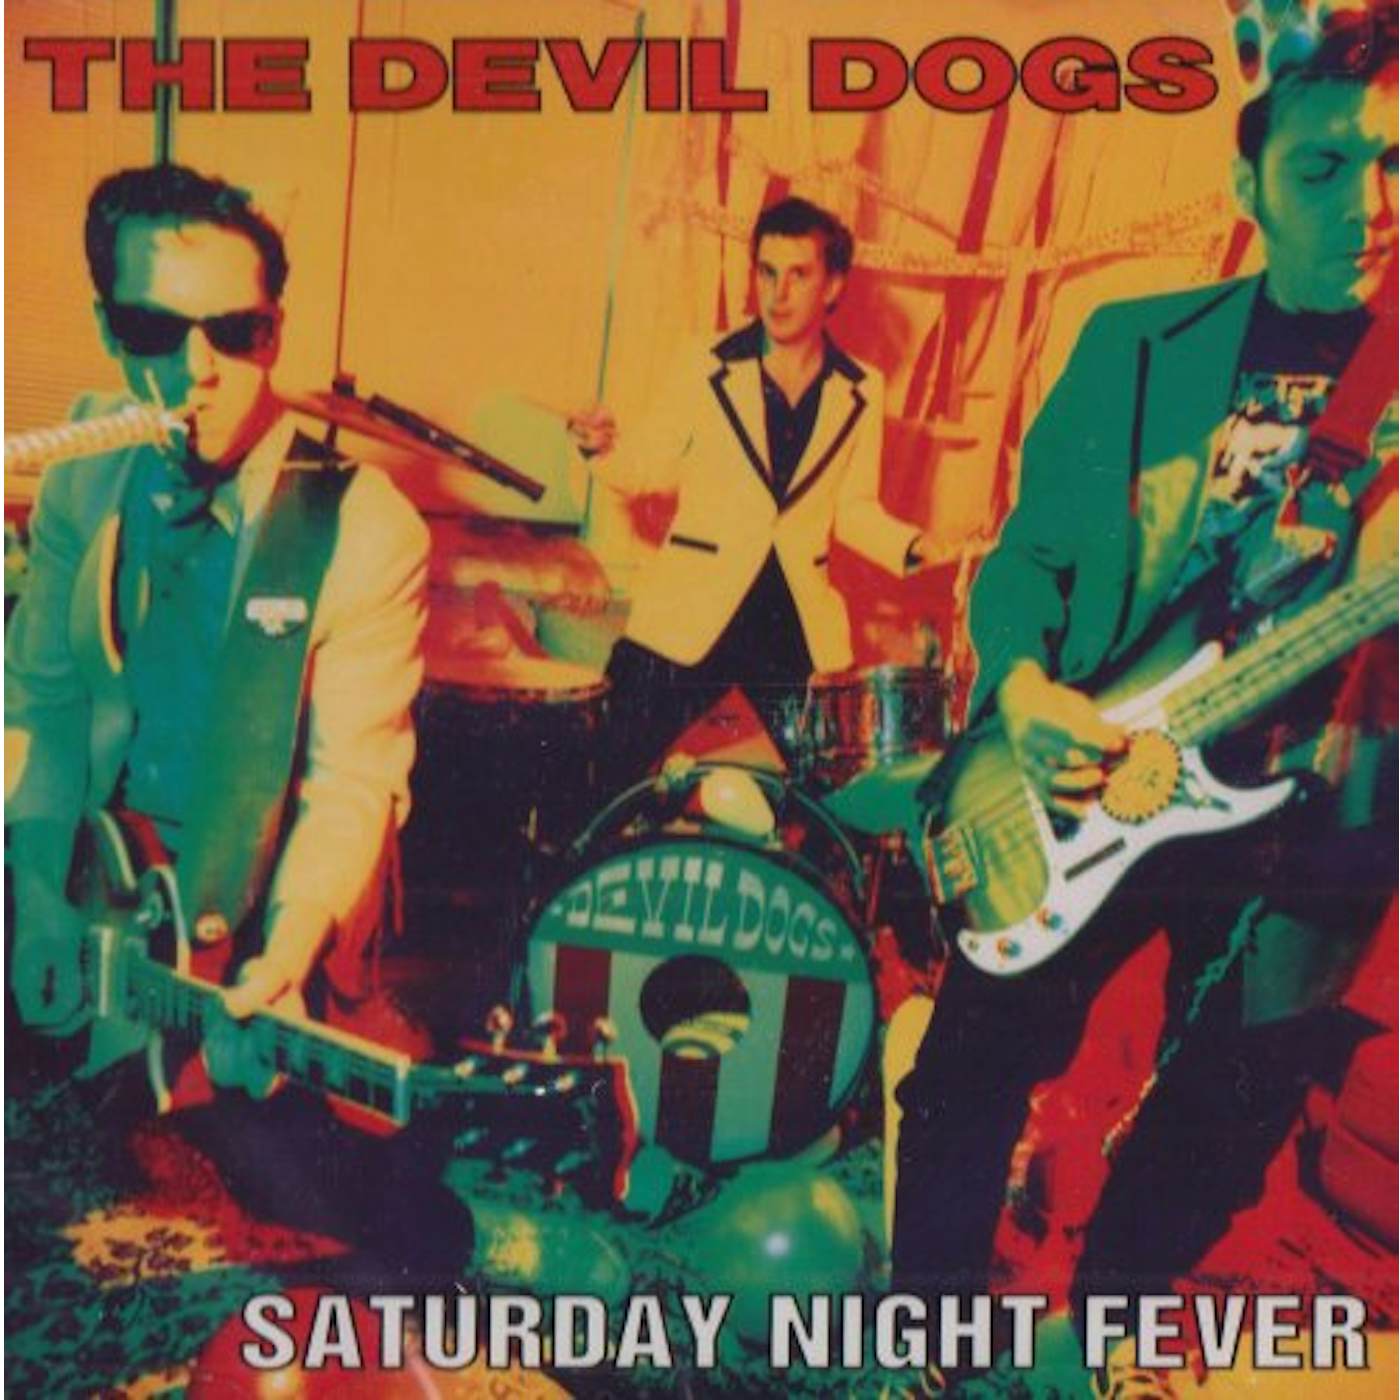 The Devil Dogs SATURDAY NITE FEVER CD